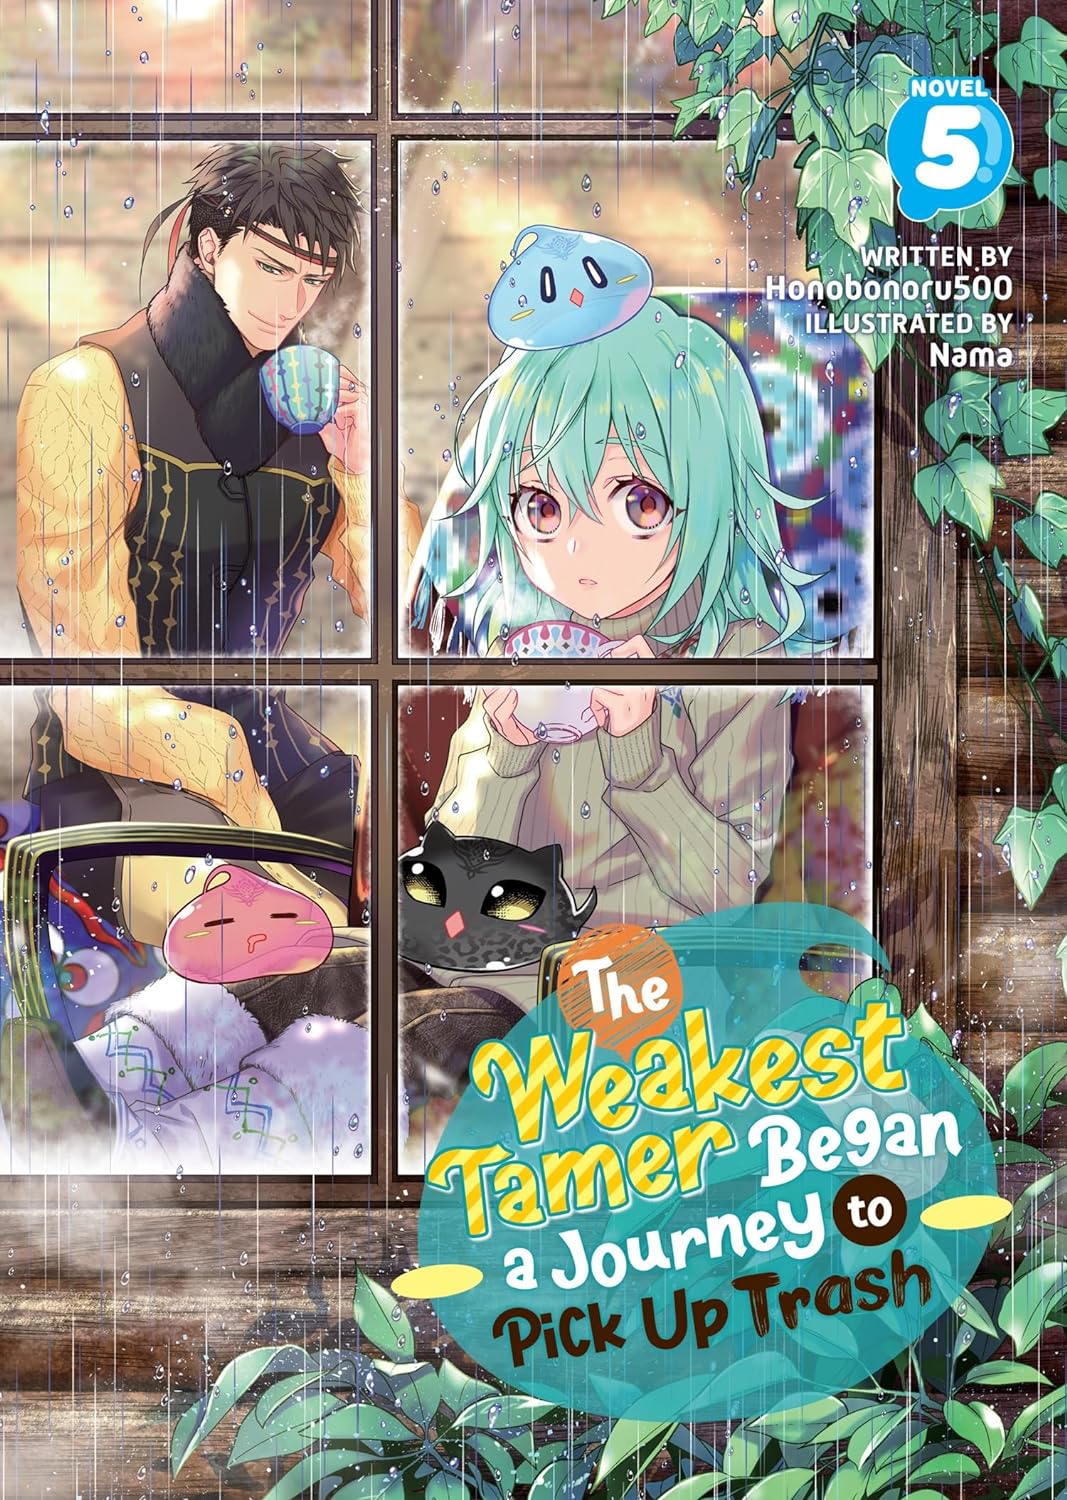 The Weakest Tamer Began a Journey to Pick Up Trash (Light Novel) Vol. 05